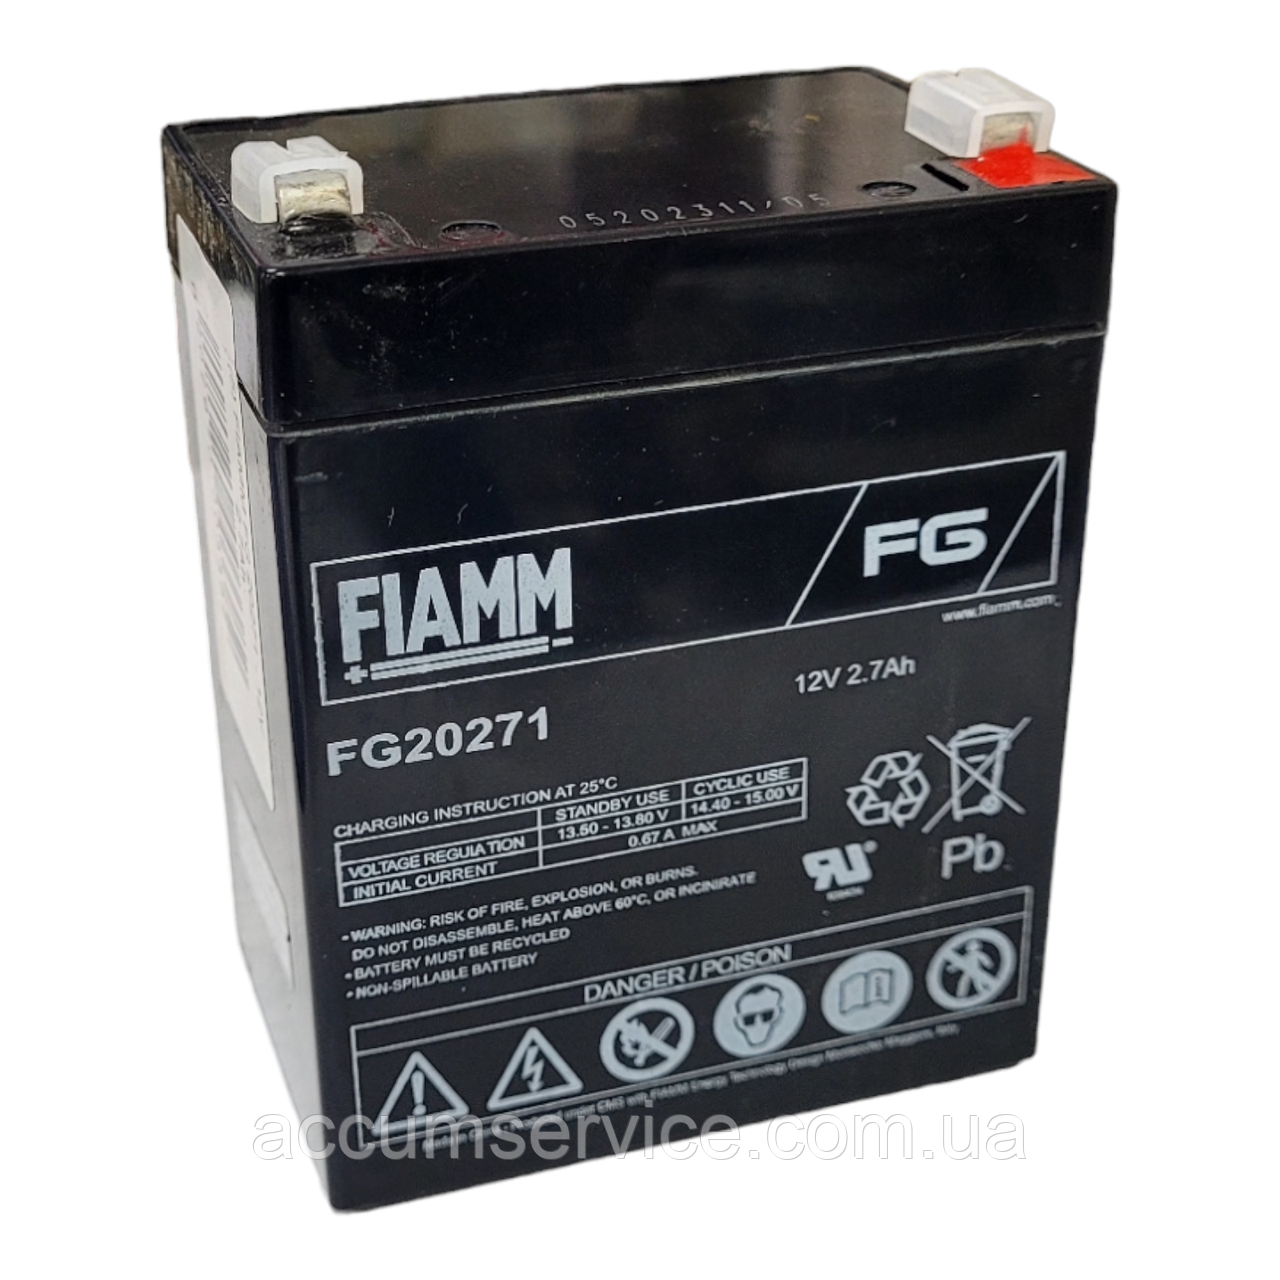 Акумулятор FIAMM FG 20271 — 12 V 2.7 Ah